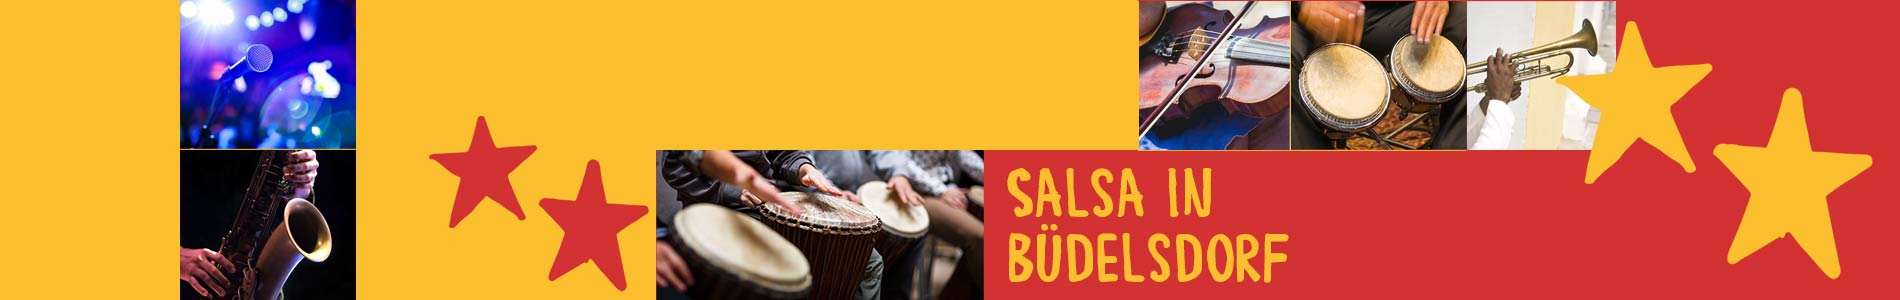 Salsa in Büdelsdorf – Salsa lernen und tanzen, Tanzkurse, Partys, Veranstaltungen